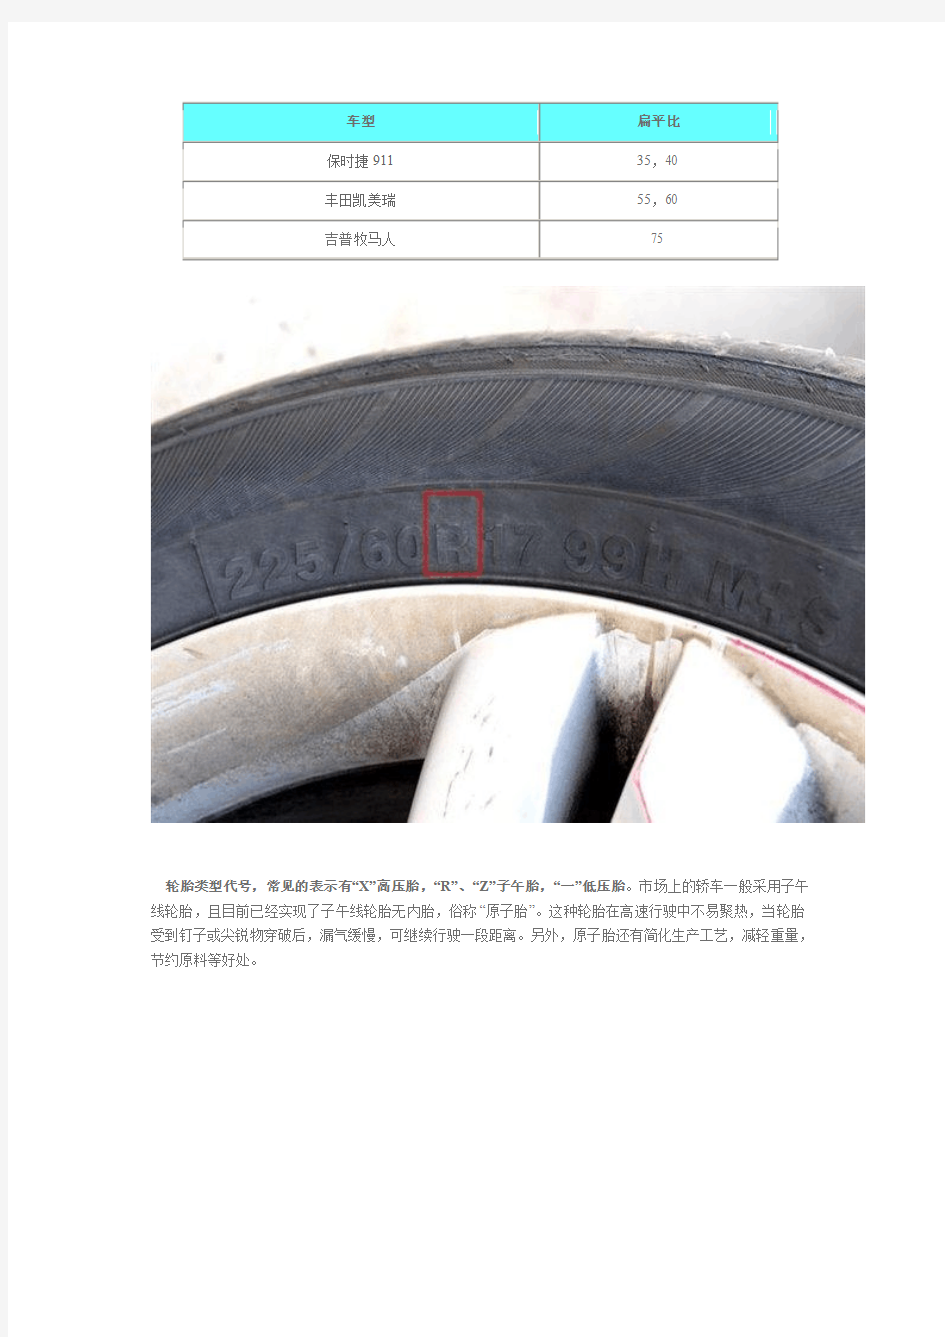 轮胎规格参数解释